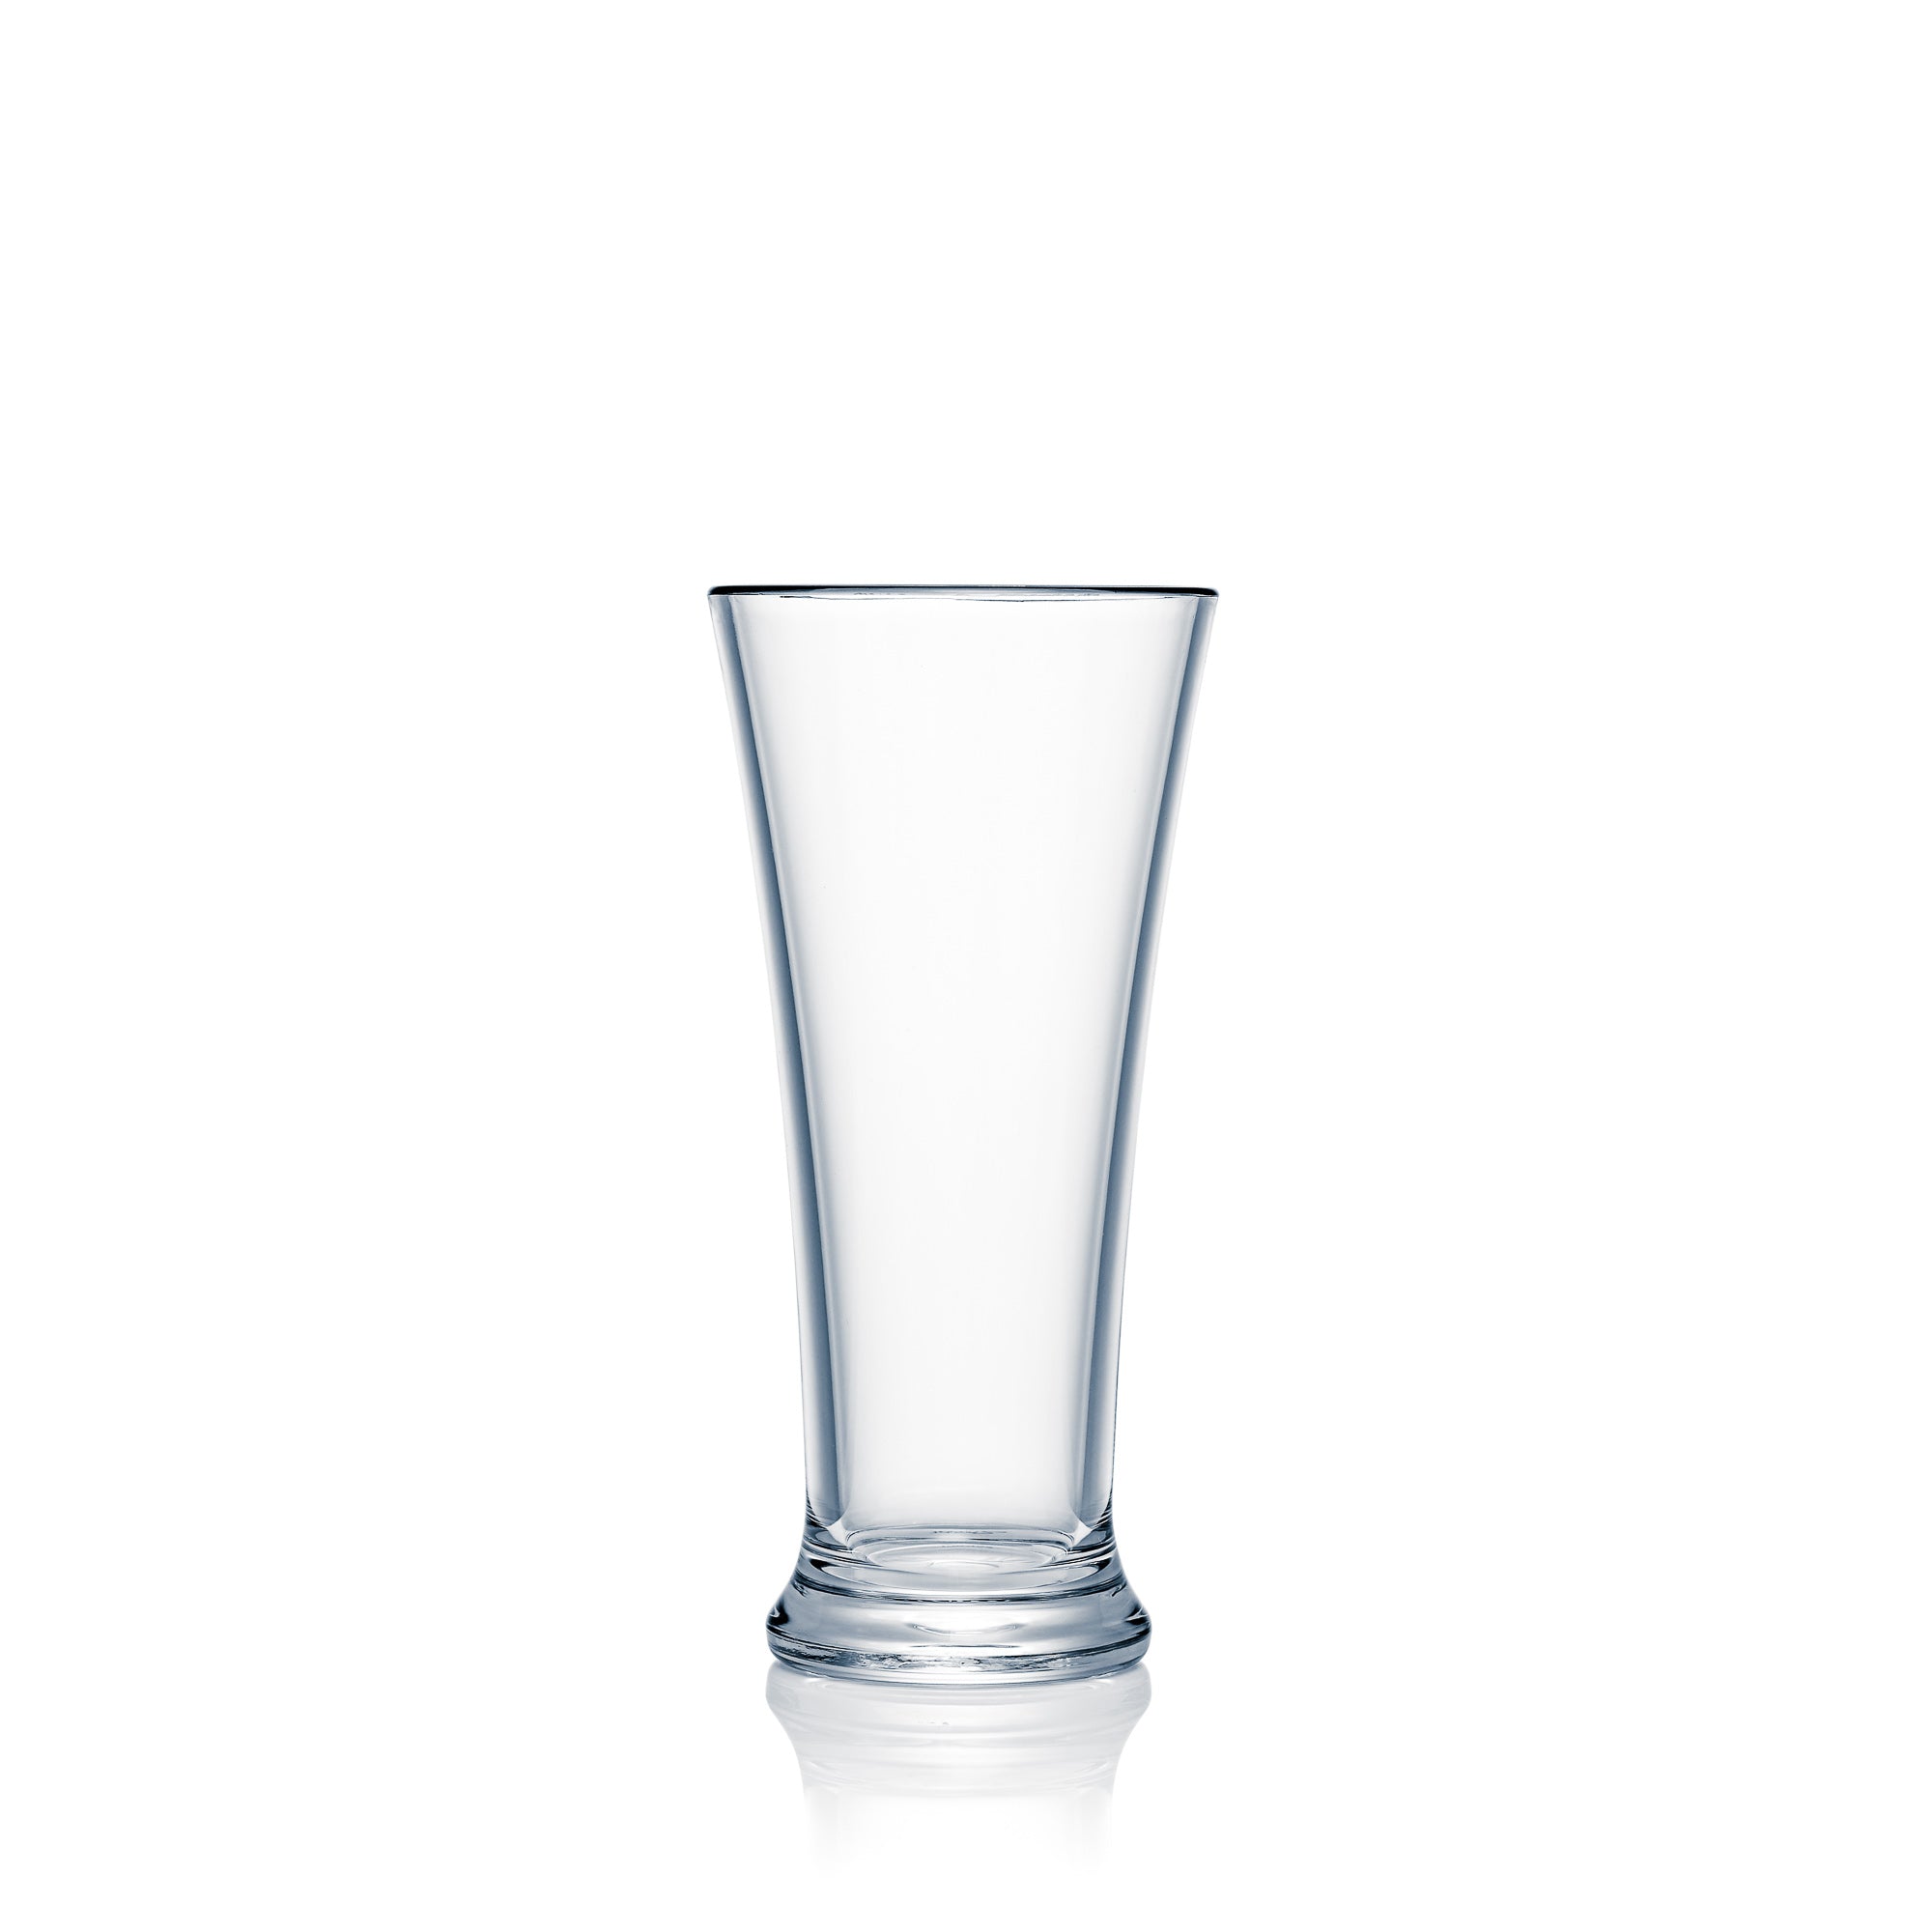 Strahl Design+Contemporary Pilsner glas (285ml) - N41500